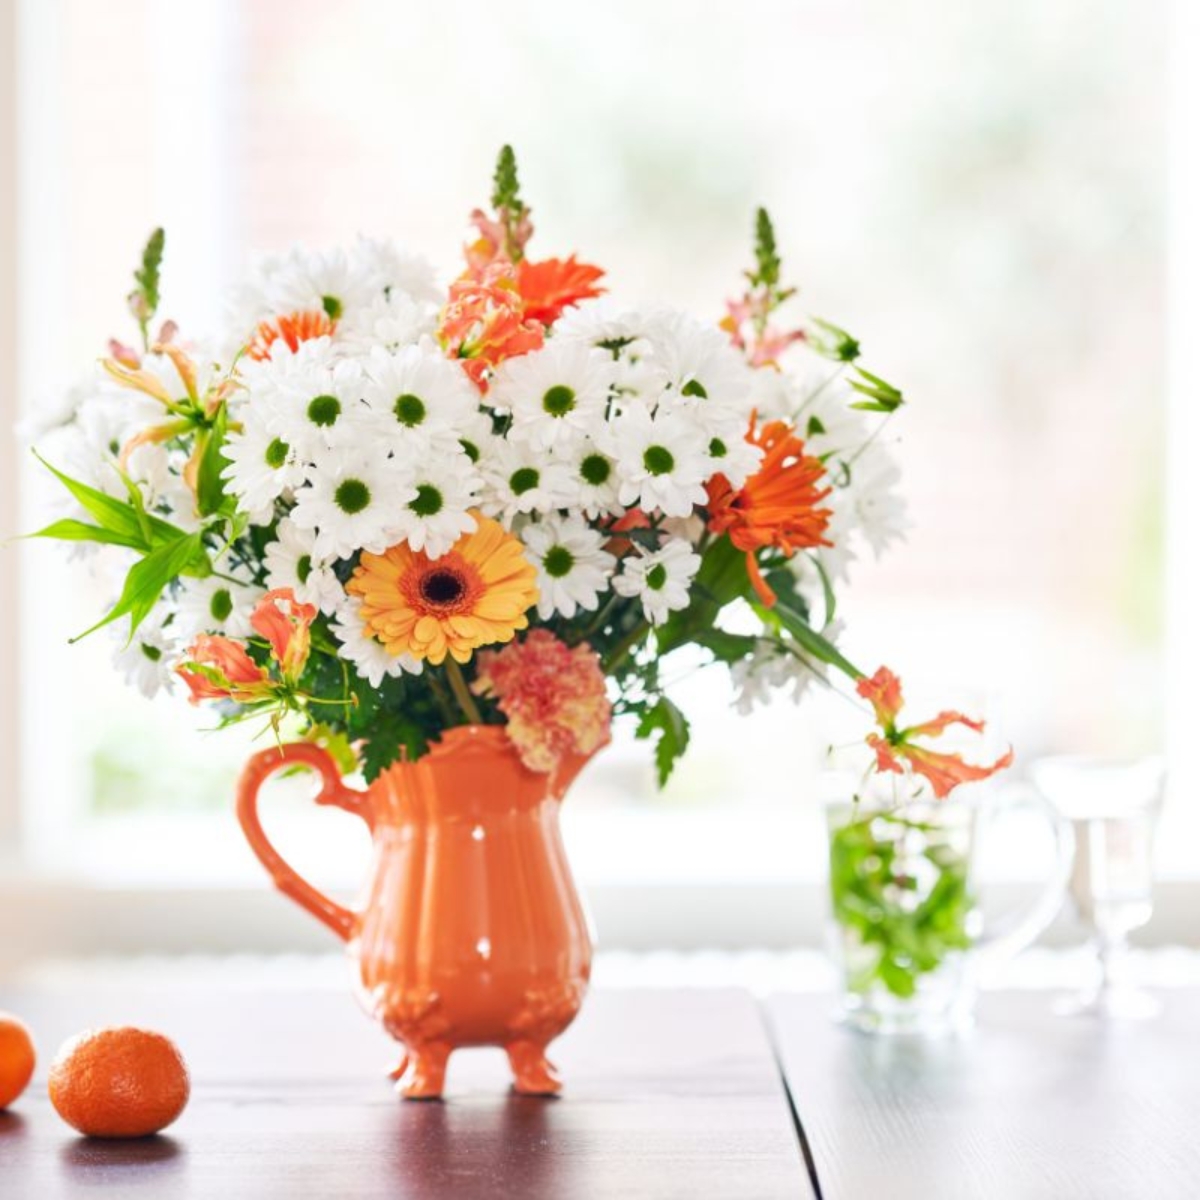 White mums in an orange vase